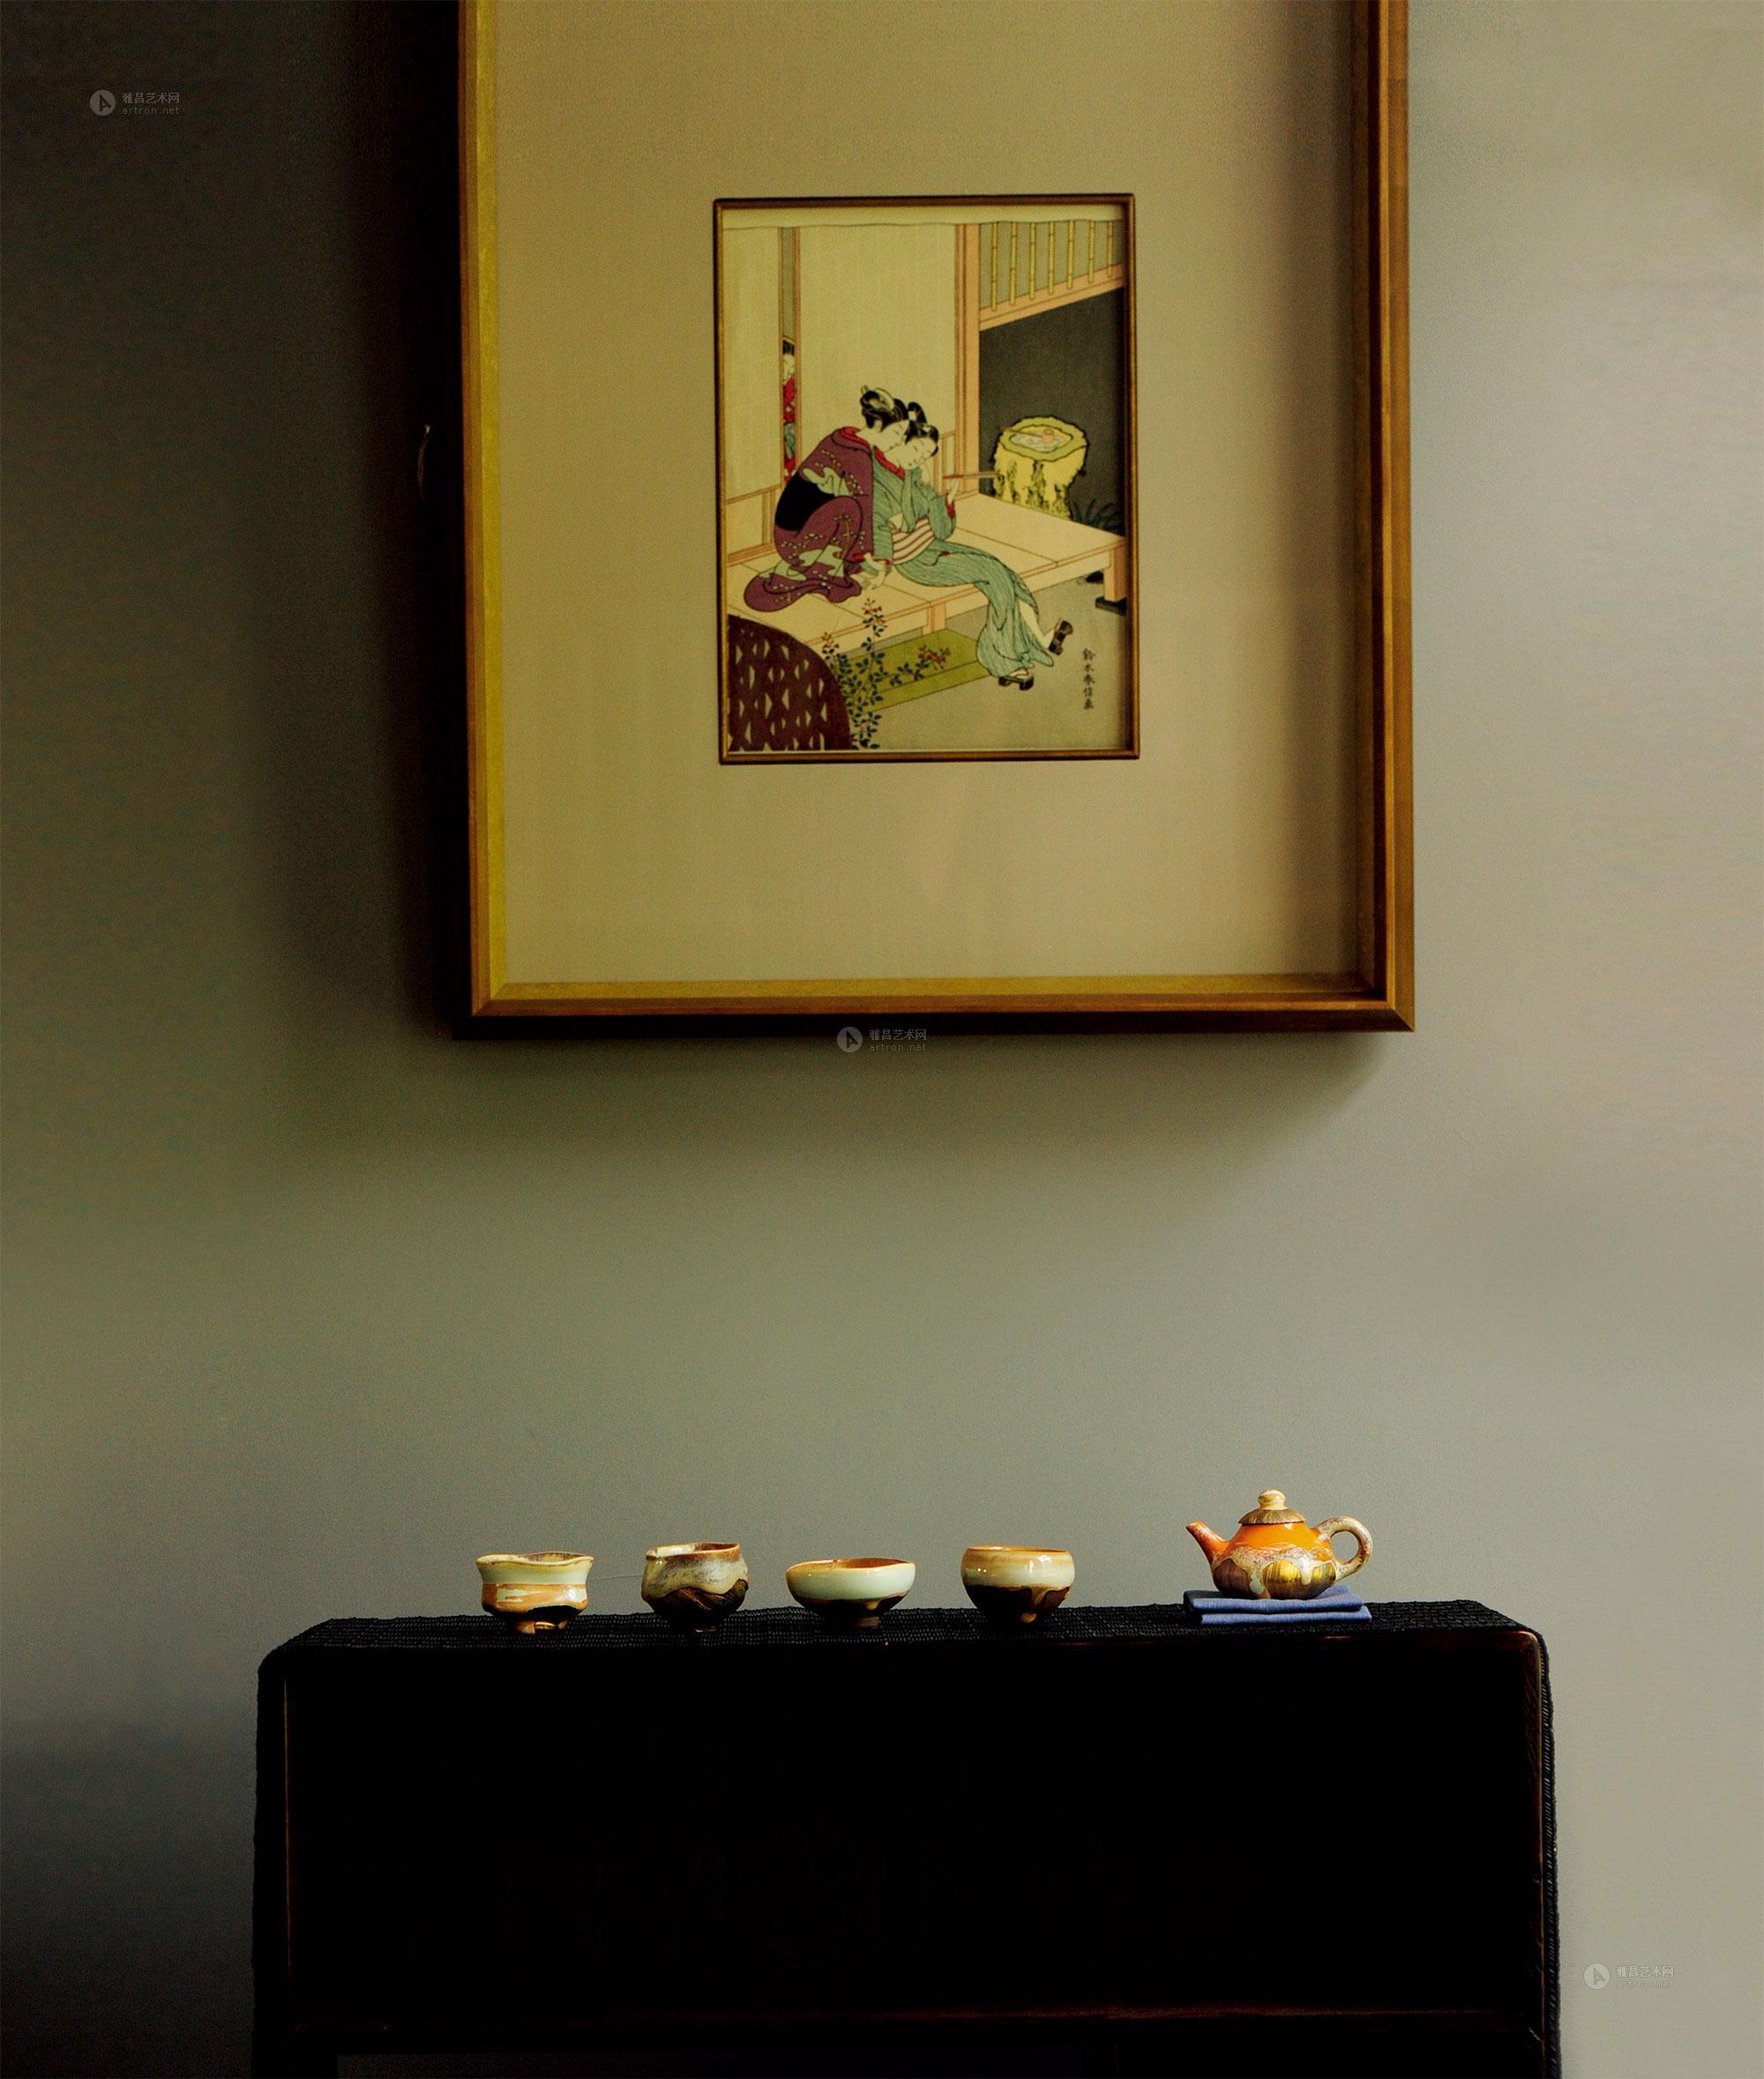 【日本茶席】拍卖品_图片_价格_鉴赏_工艺品其它_雅昌艺术品拍卖网